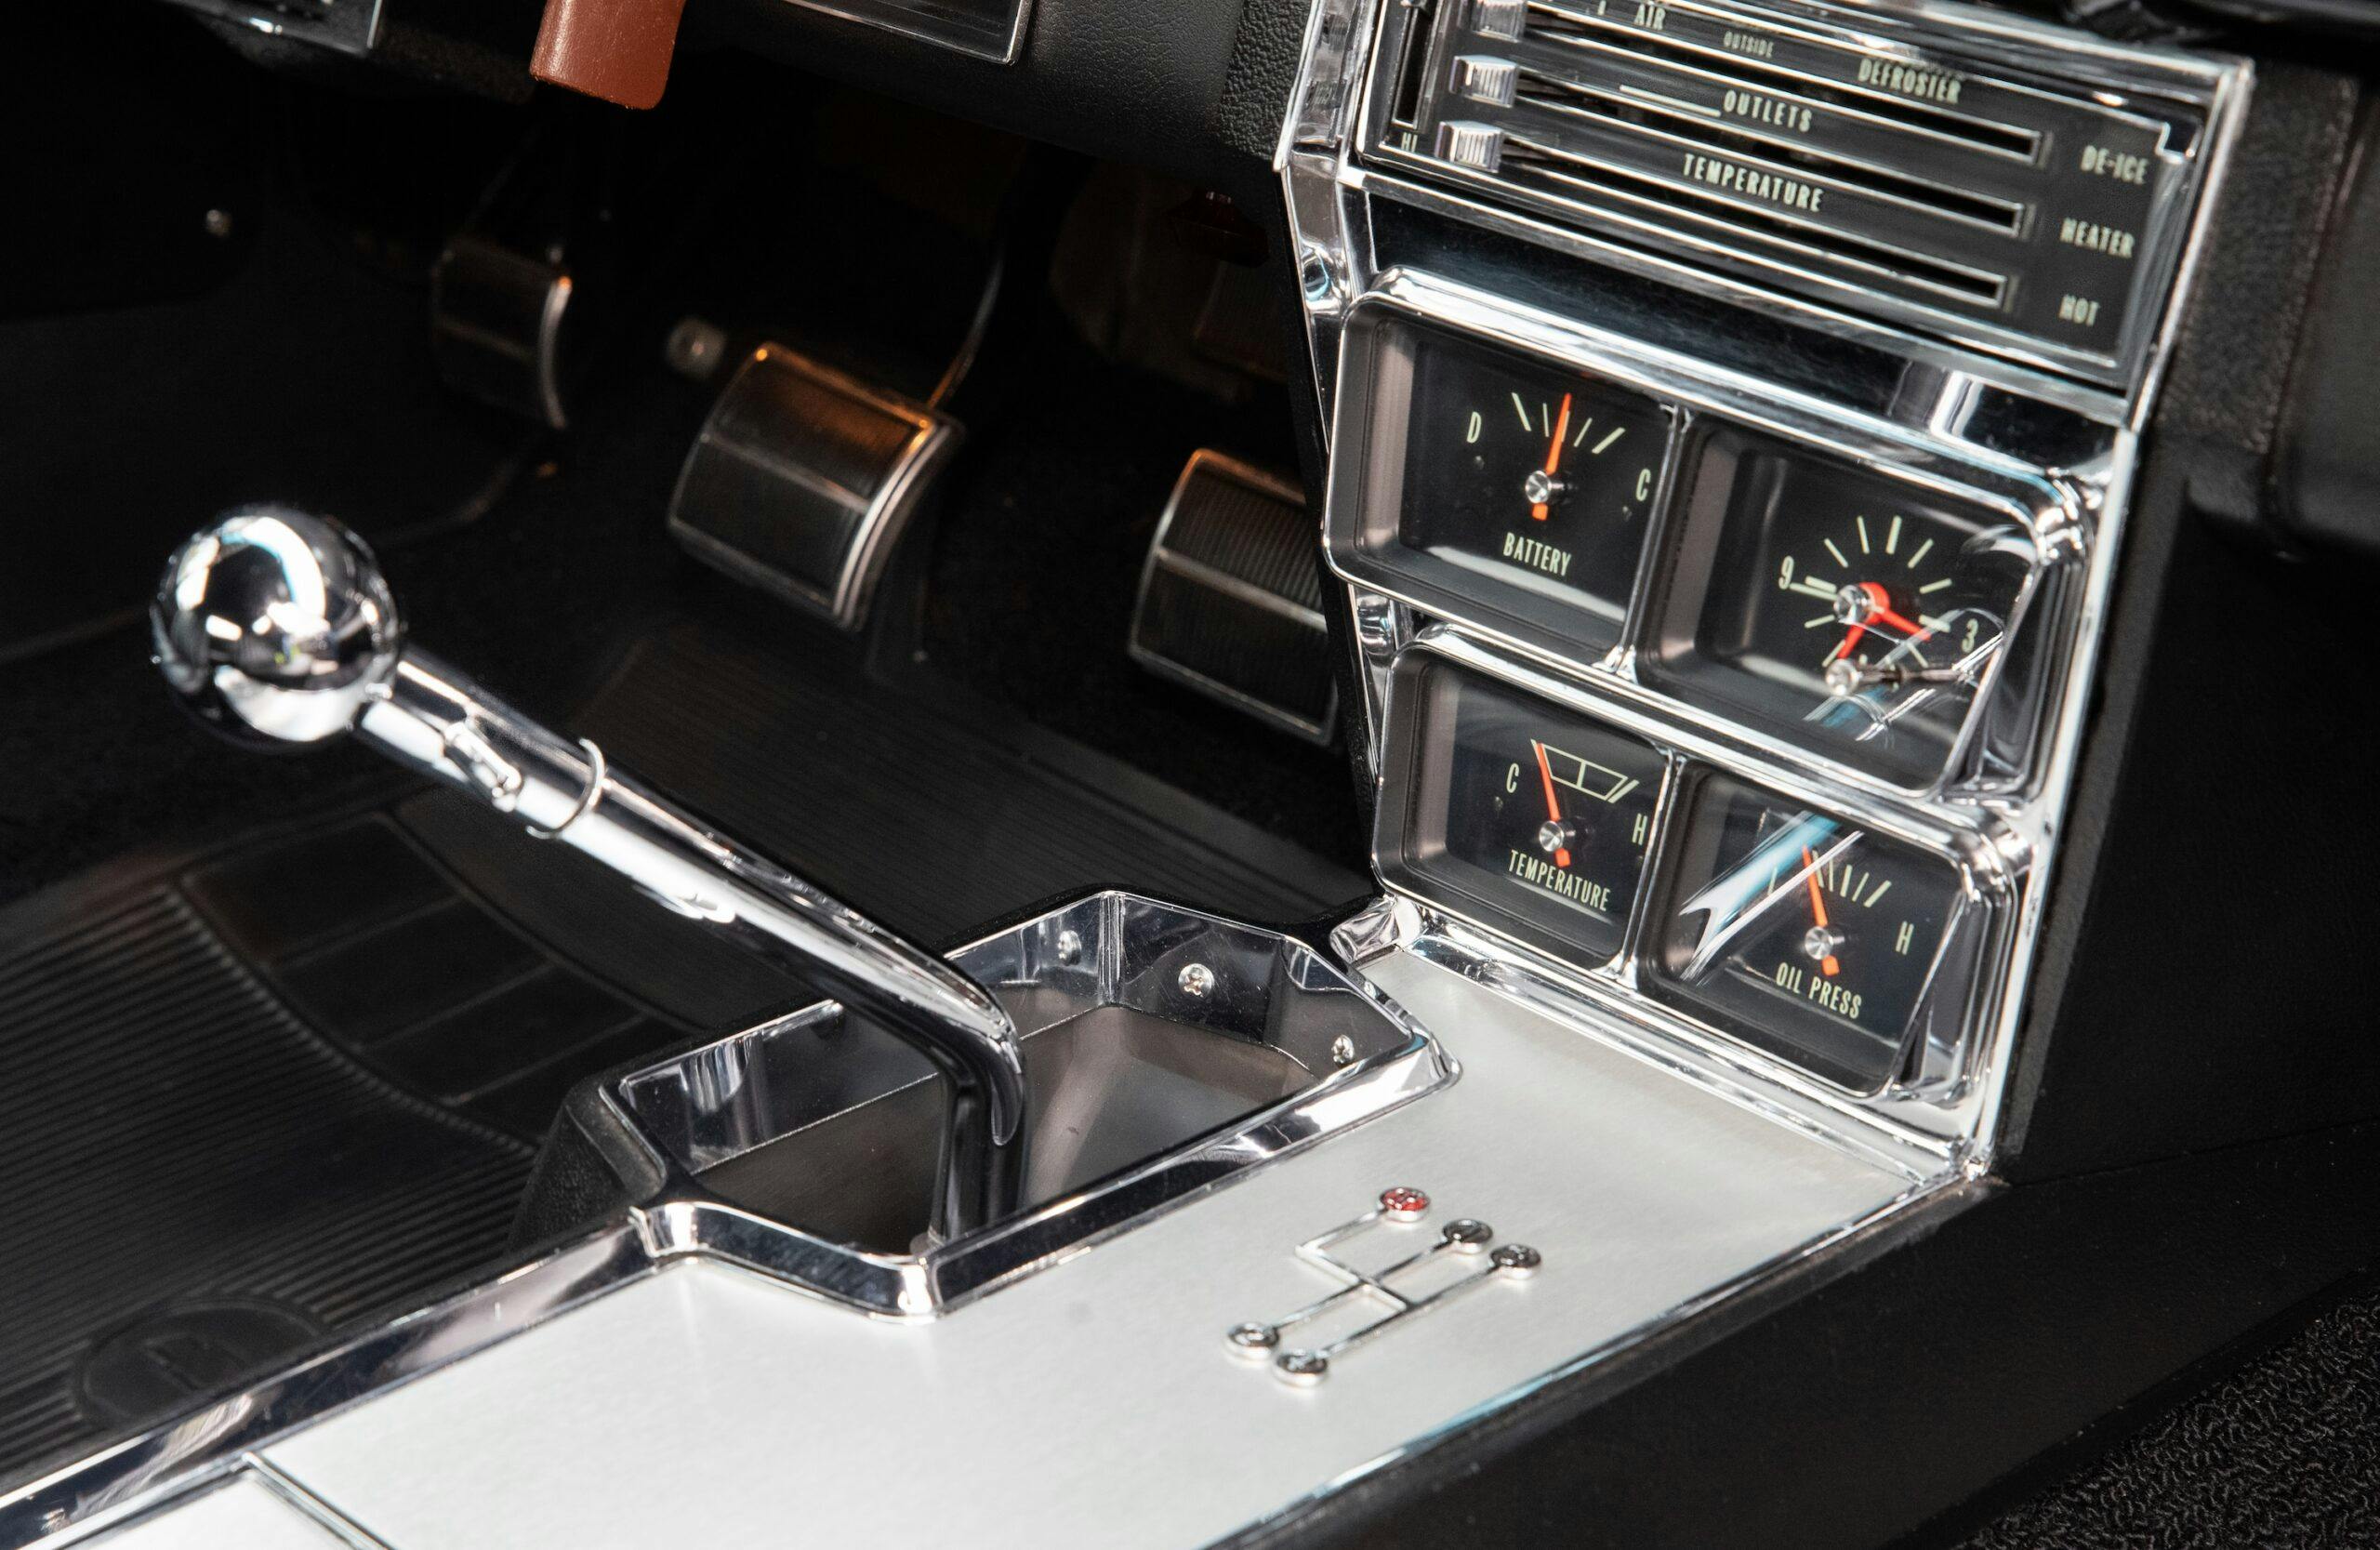 1966 Impala Super Sport convertible interior center console and shifter